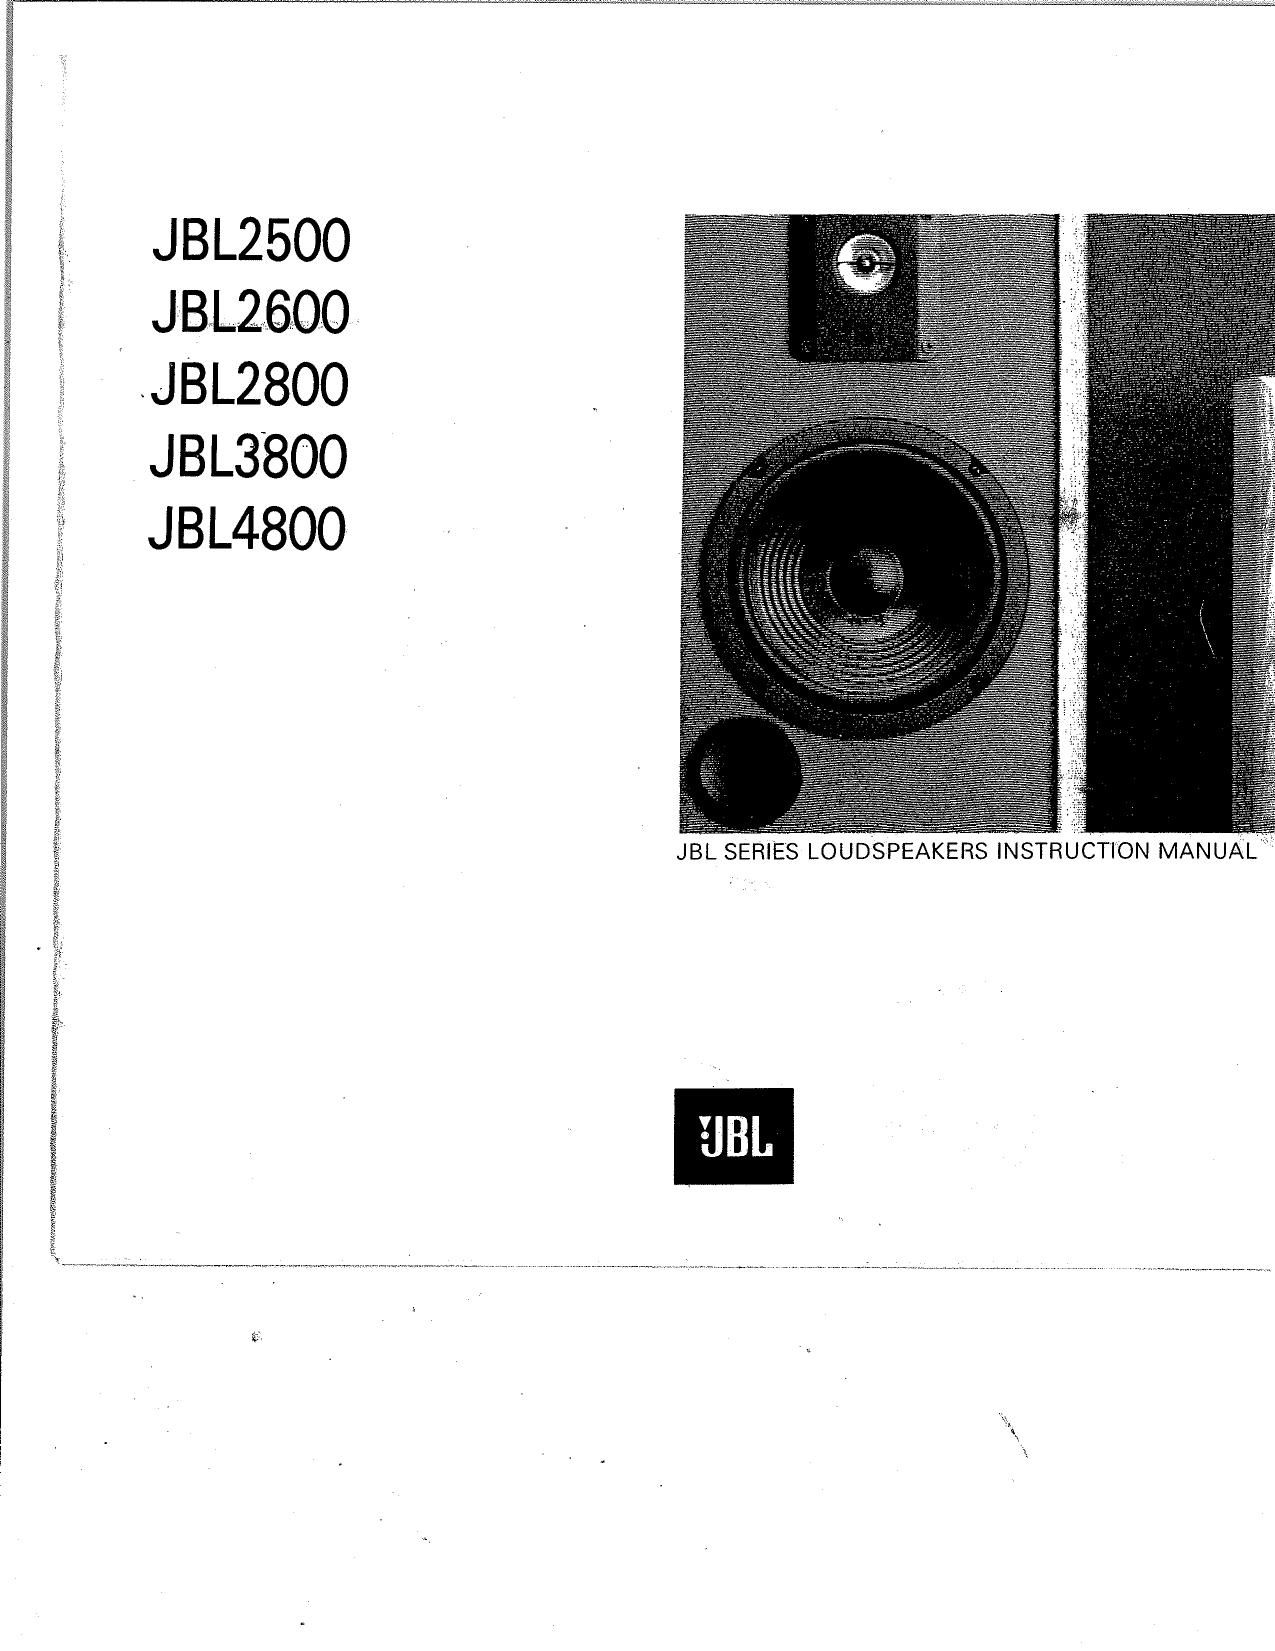 Jbl 3800 Owners Manual